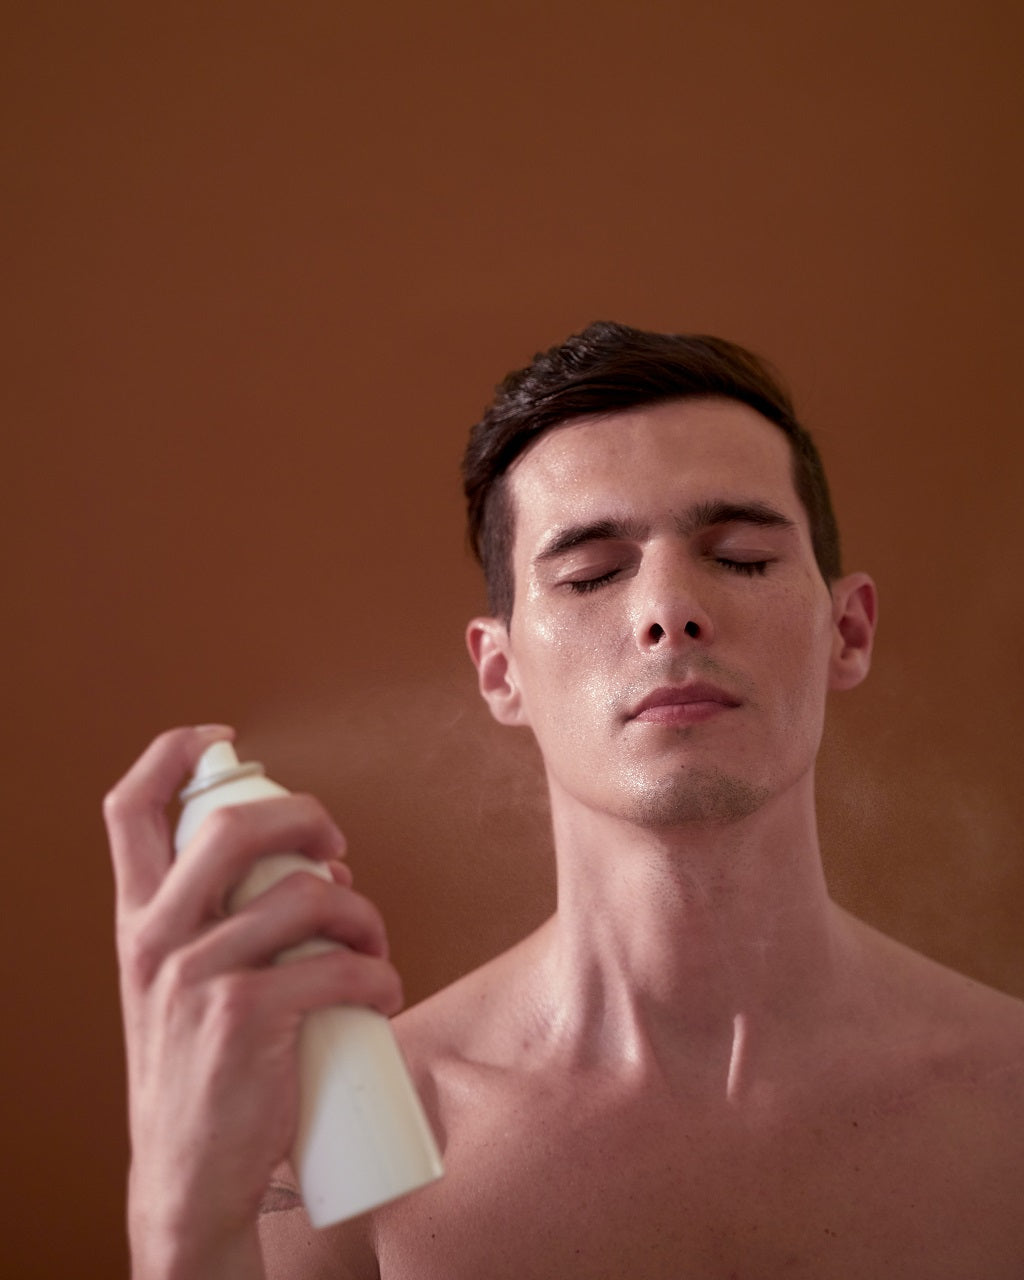 Água termal: o que é, o que faz e quais os benefícios para pele